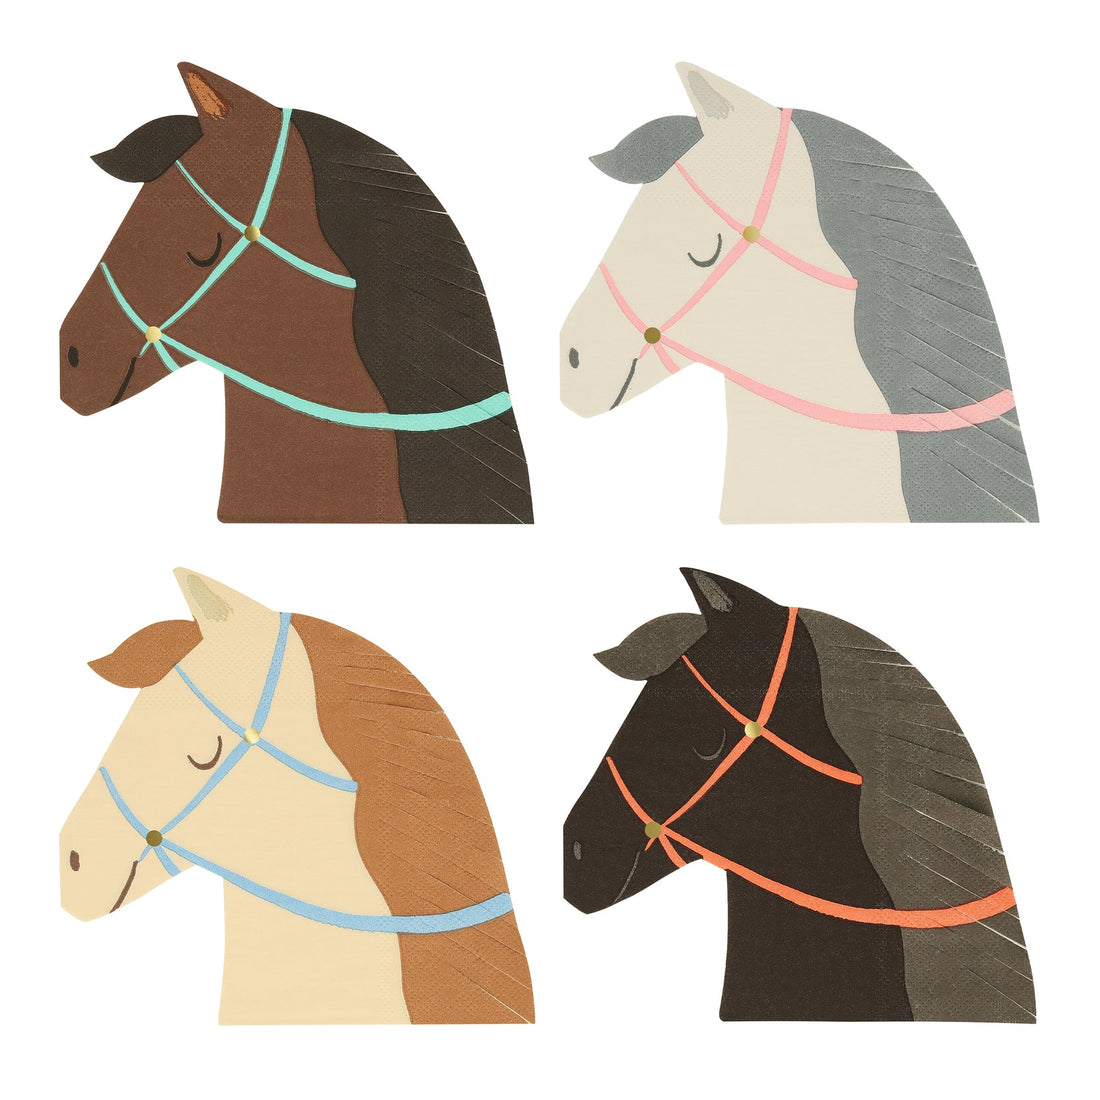 A set of four Meri Meri Horse Napkins in different colors.